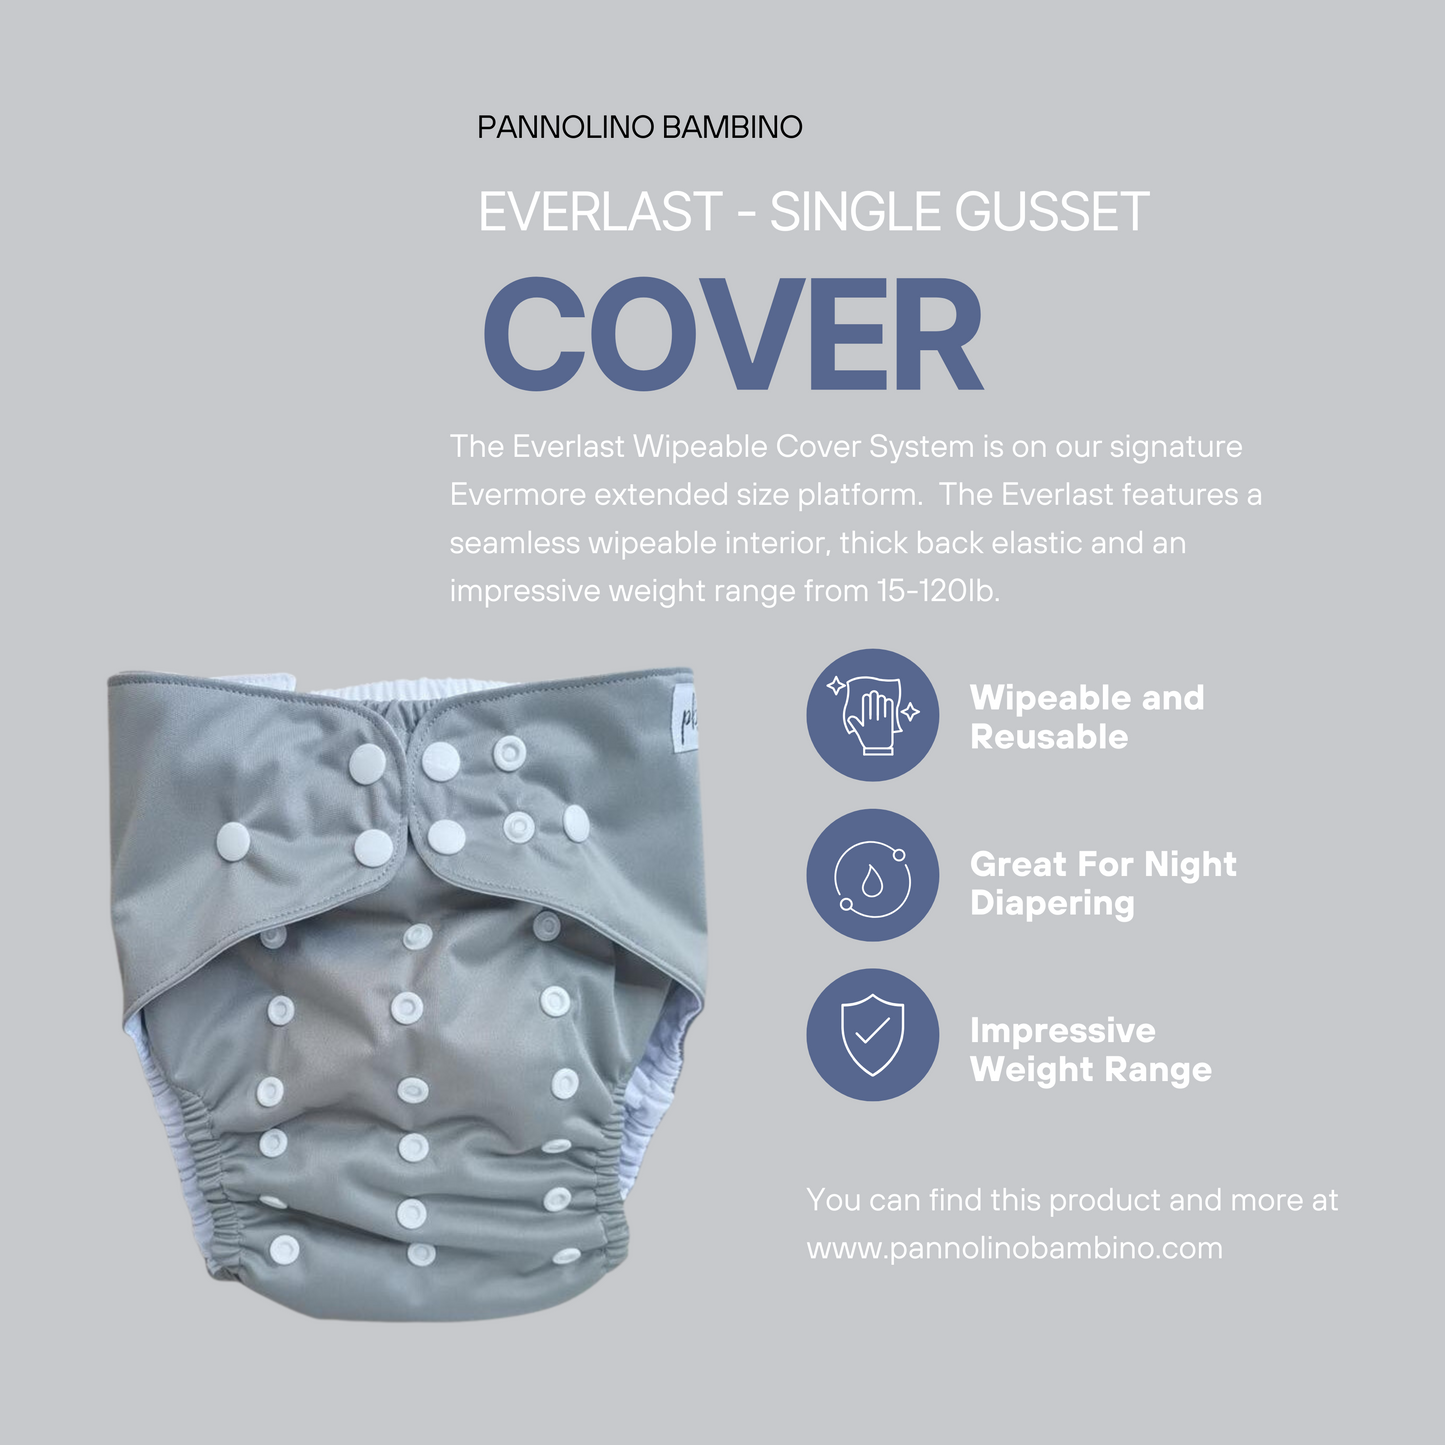 Everlast Wipeable Cover System - Selene